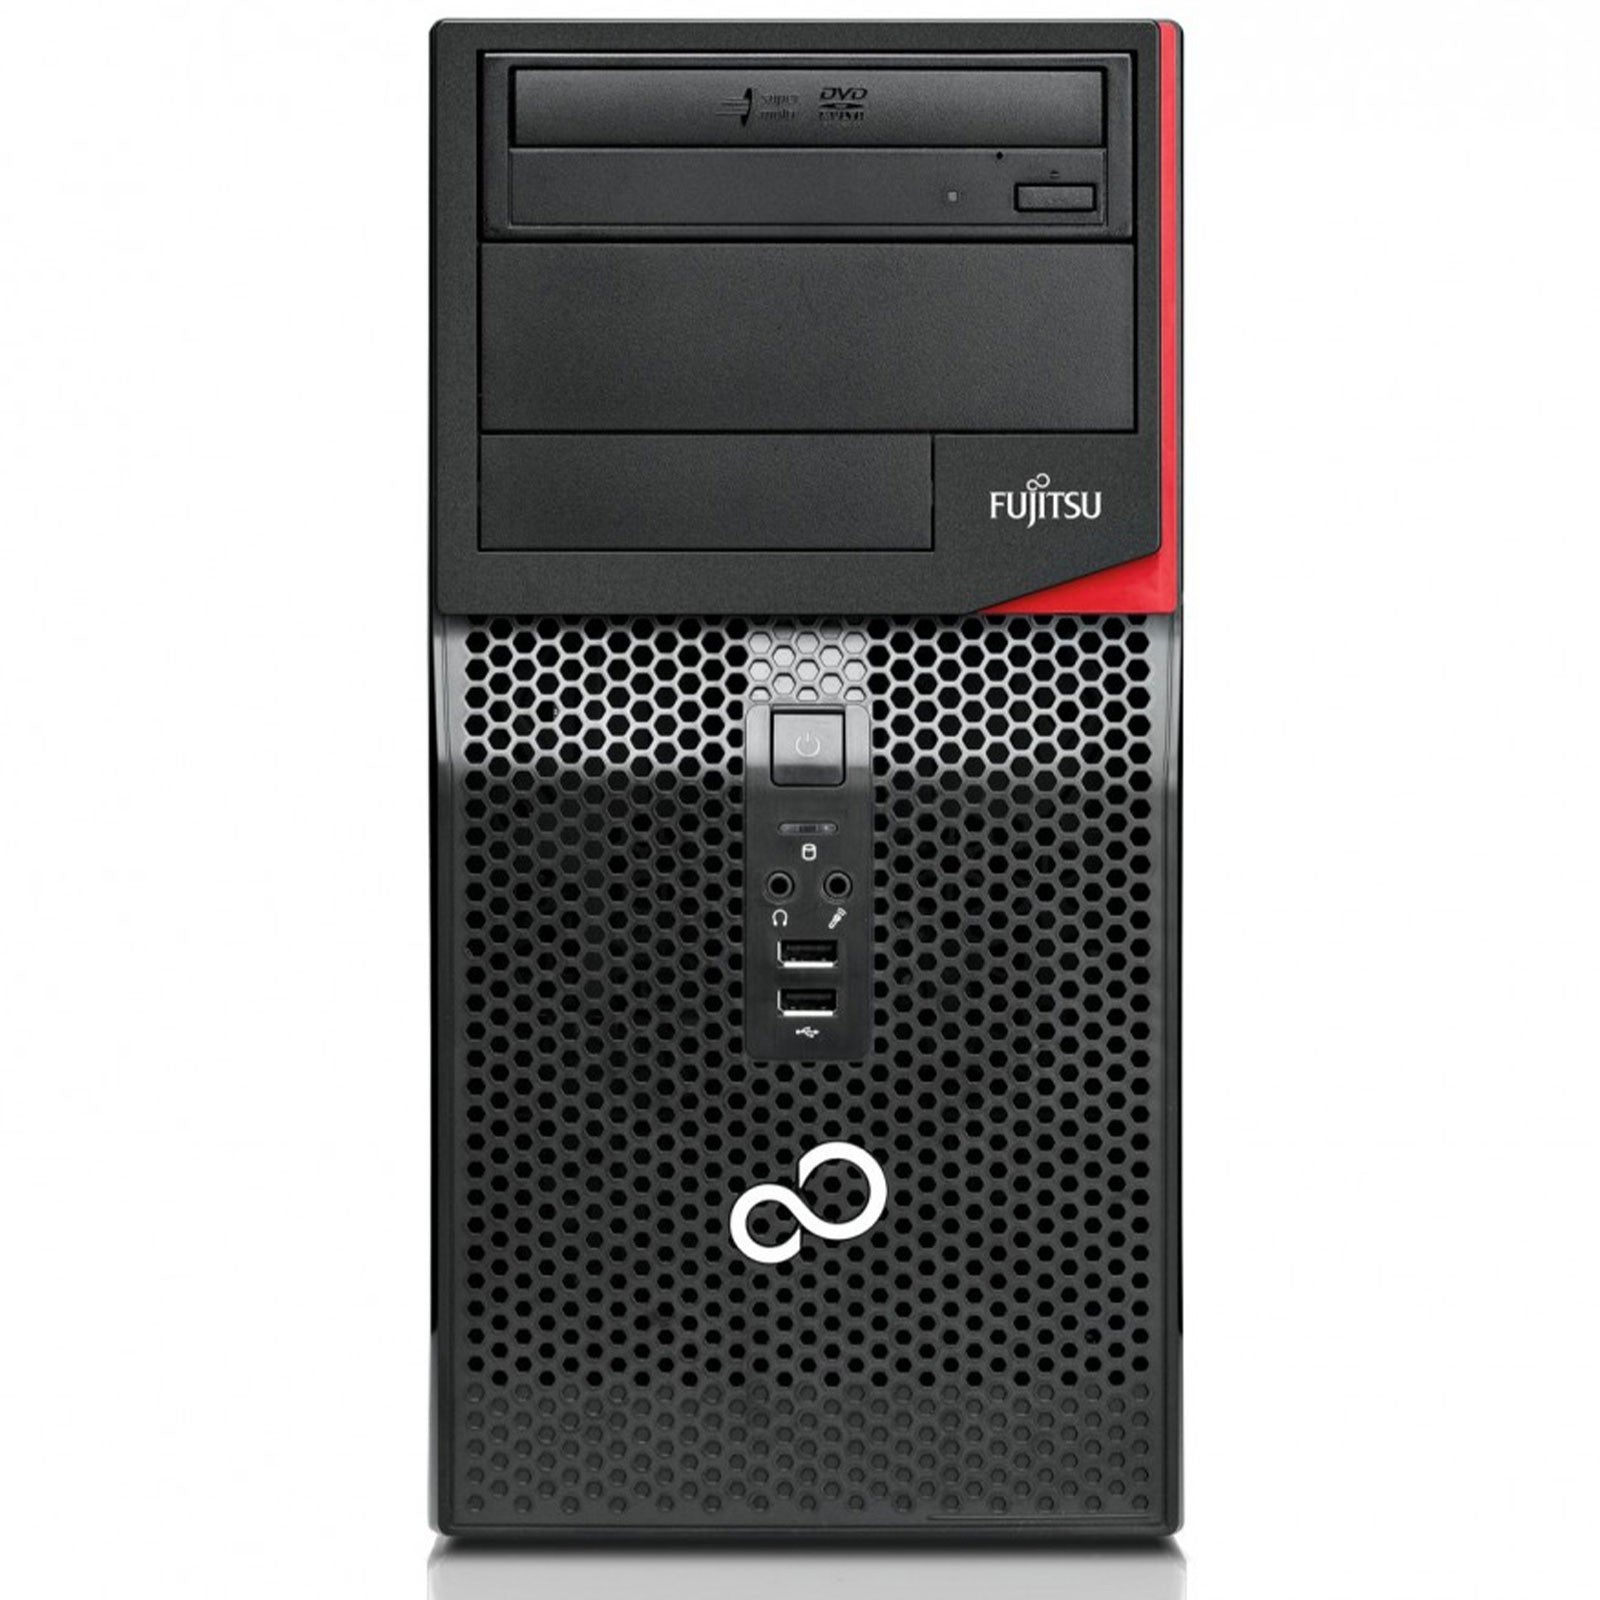 PC Desktop Ricondizionato - Grado A - Fujitsu Esprimo P520 Tower PC Computer Intel i5-4460 Ram 8GB SSD 240GB DVD-ROM Windows 10 Pro (Ricondizionato Grado A) - Disponibile in 2-4 giorni lavorativi